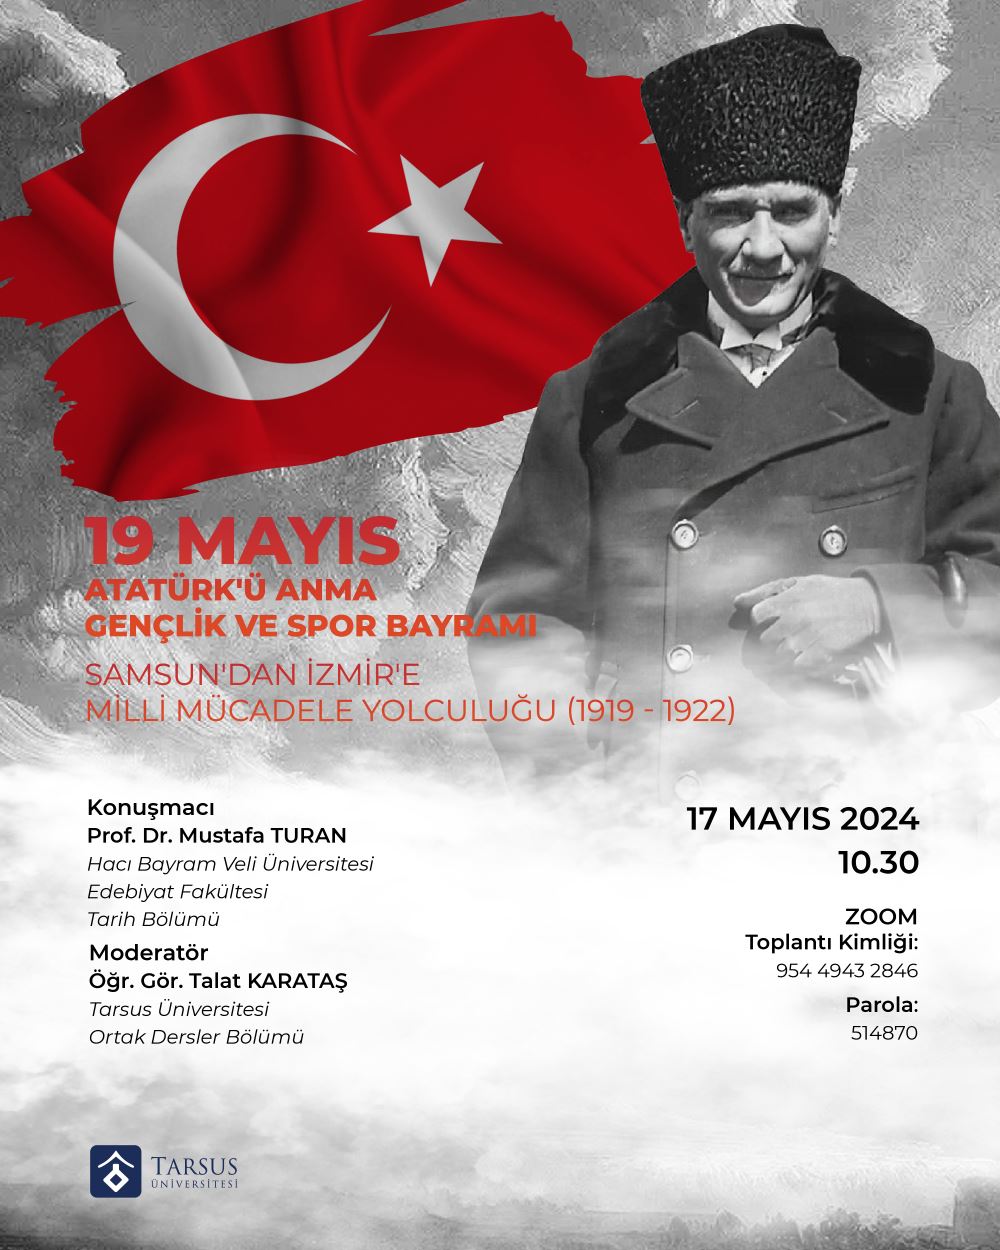 19 Mayıs Atatürk'ü Anma Gençlik ve Spor Bayramı - Samsun'dan İzmir'e Milli Mücadele Yolculuğu